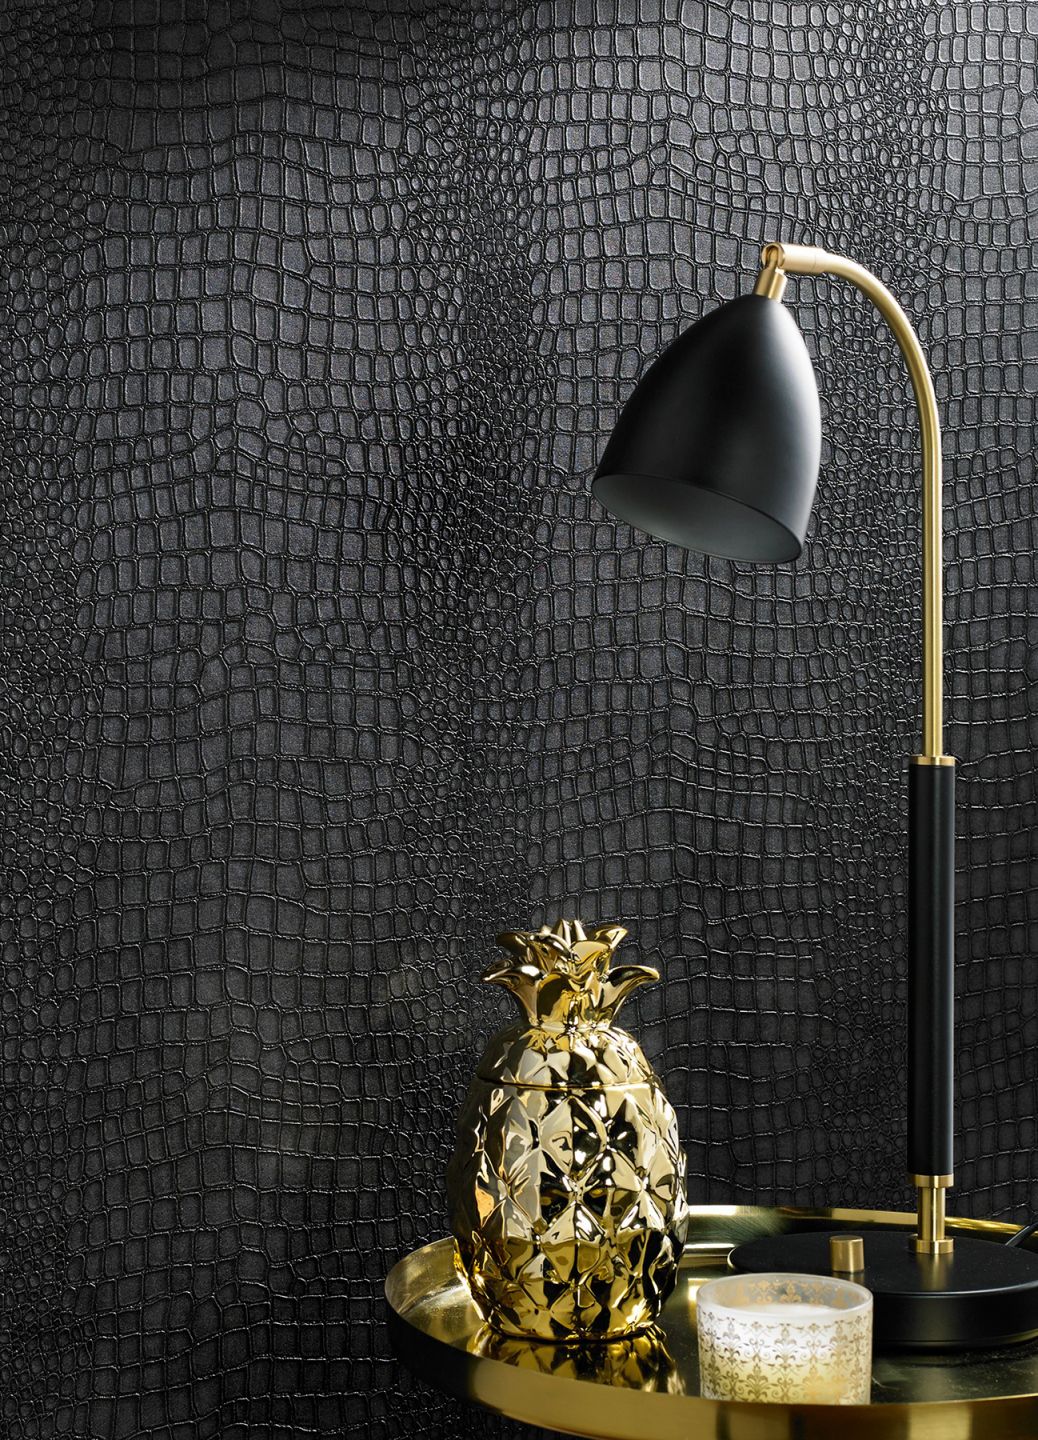 Eine schwarze Krokodilhaut-Tapete in Lederoptik, davor ein goldener Beistelltisch mit Lampe und goldener Deko-Ananas